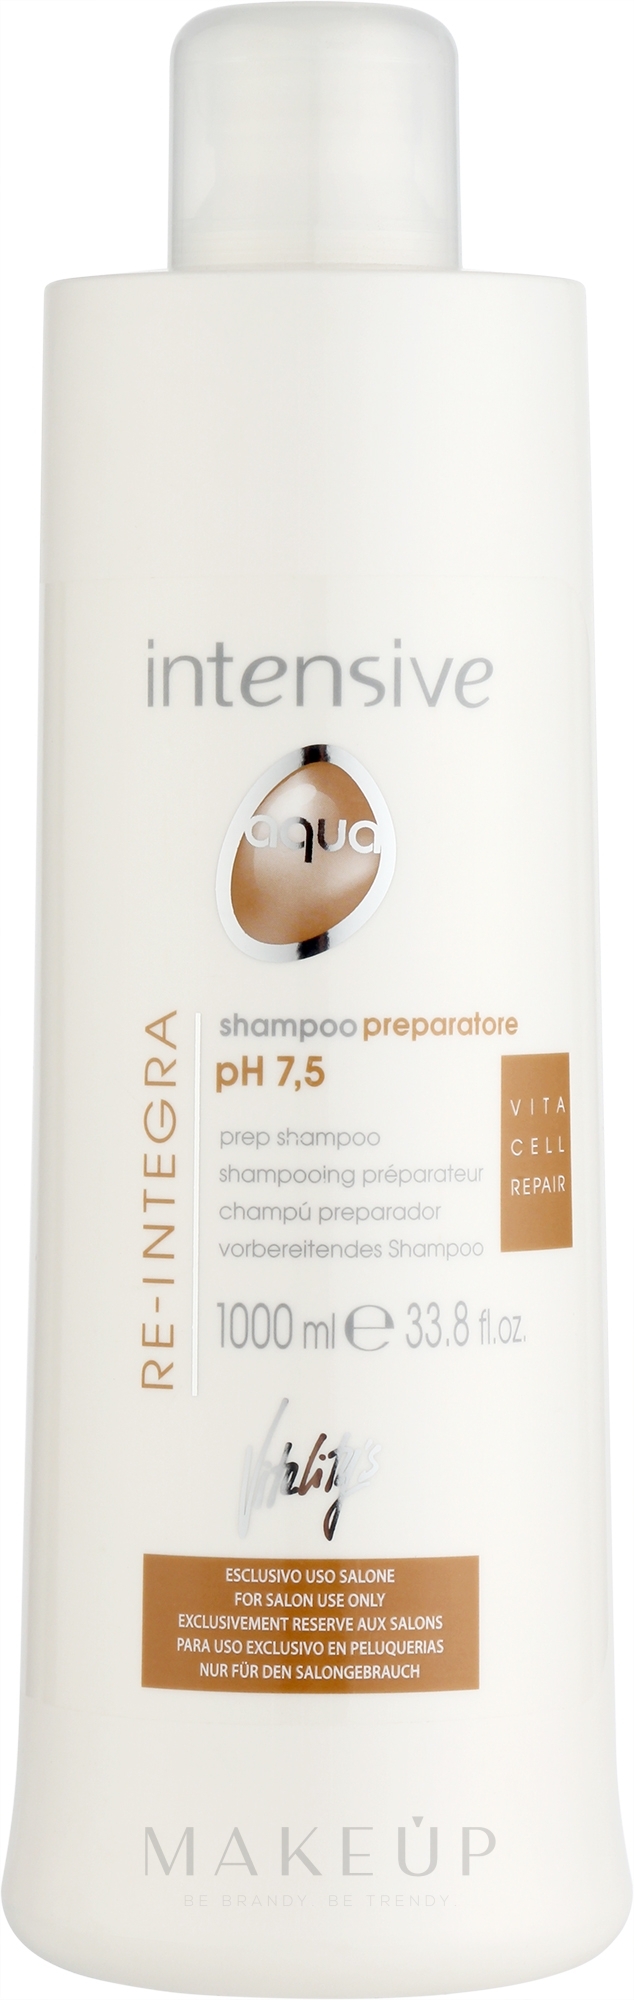 Tiefenreinigendes Shampoo für alle Haartypen - Vitality's Intensive Aqua Re-Integra Shampoo pH 7,5 — Bild 1000 ml